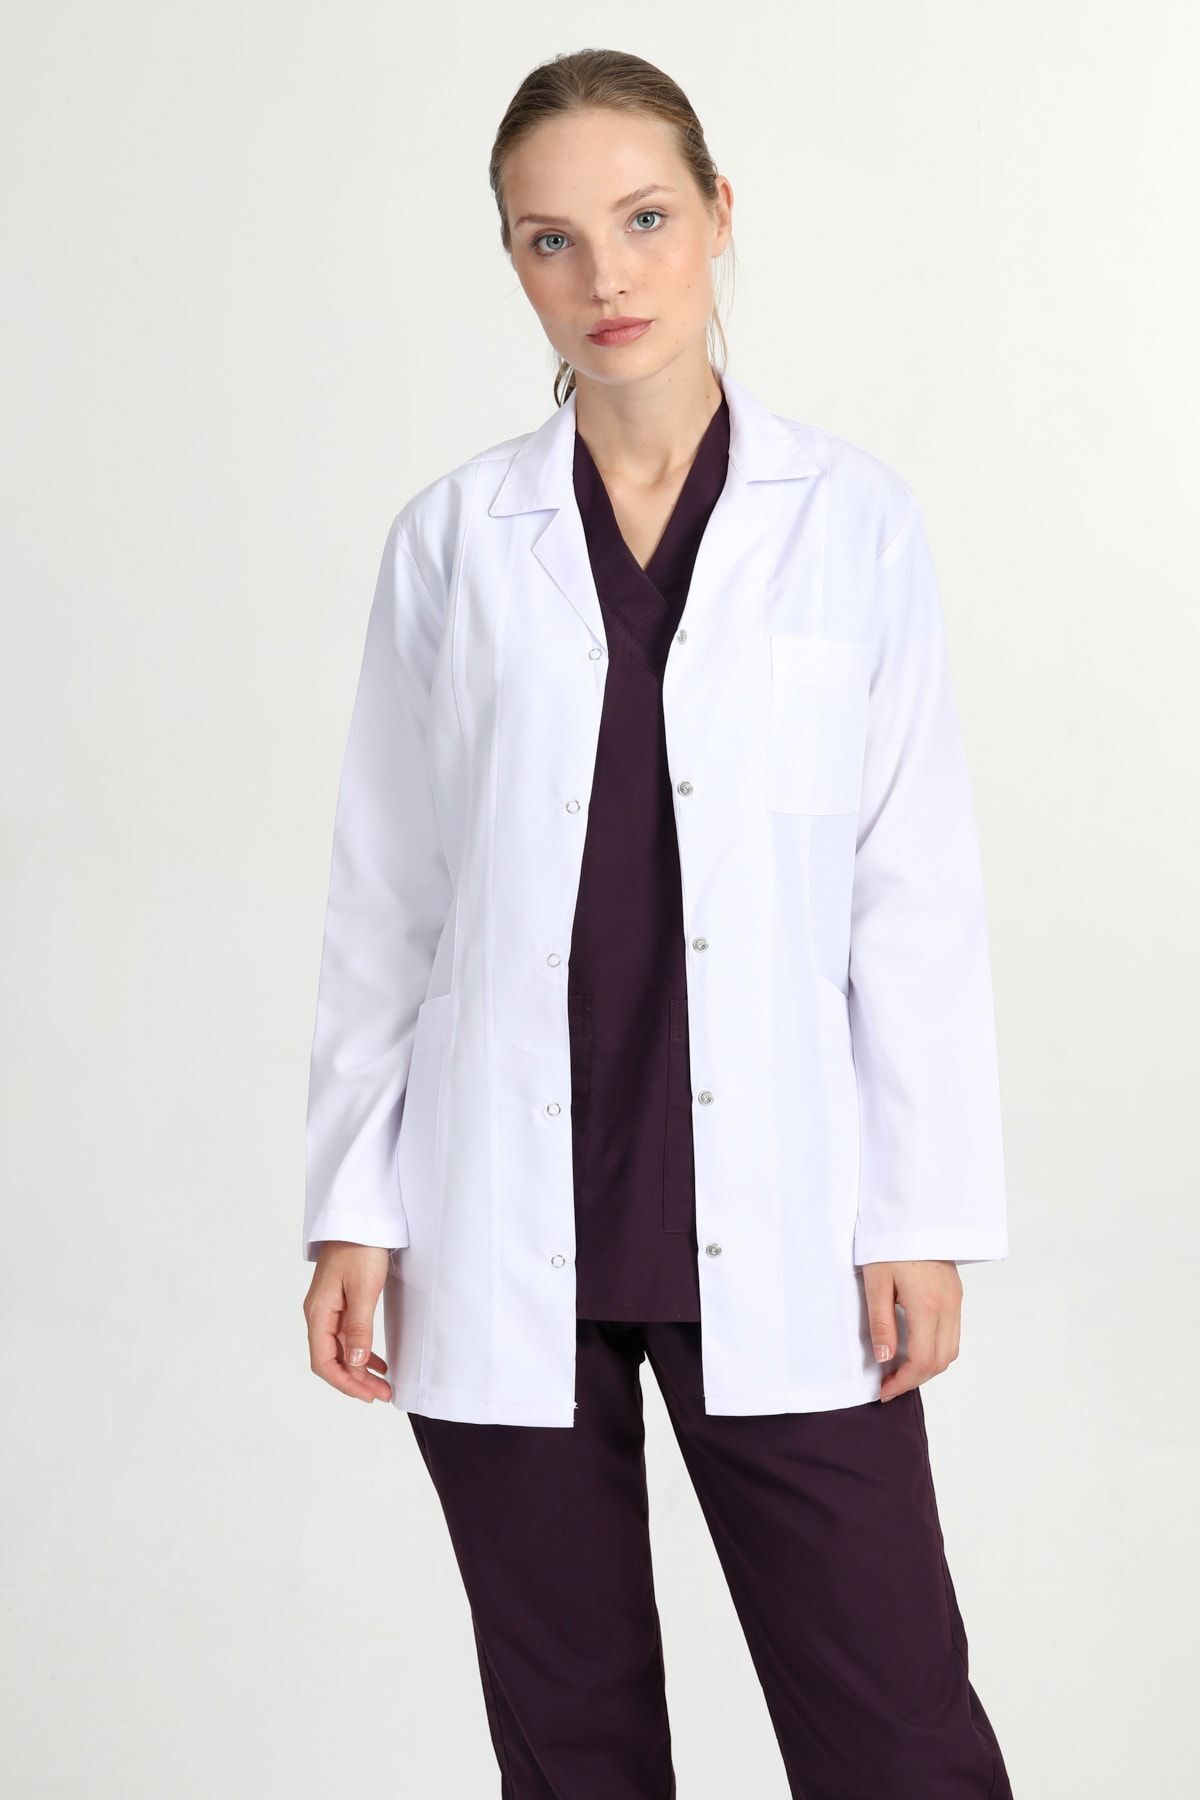 BAŞAK Ceket Boy Beyaz Gömlek Yaka Doktor Hemşire Öğretmen Önlüğü RUF14012